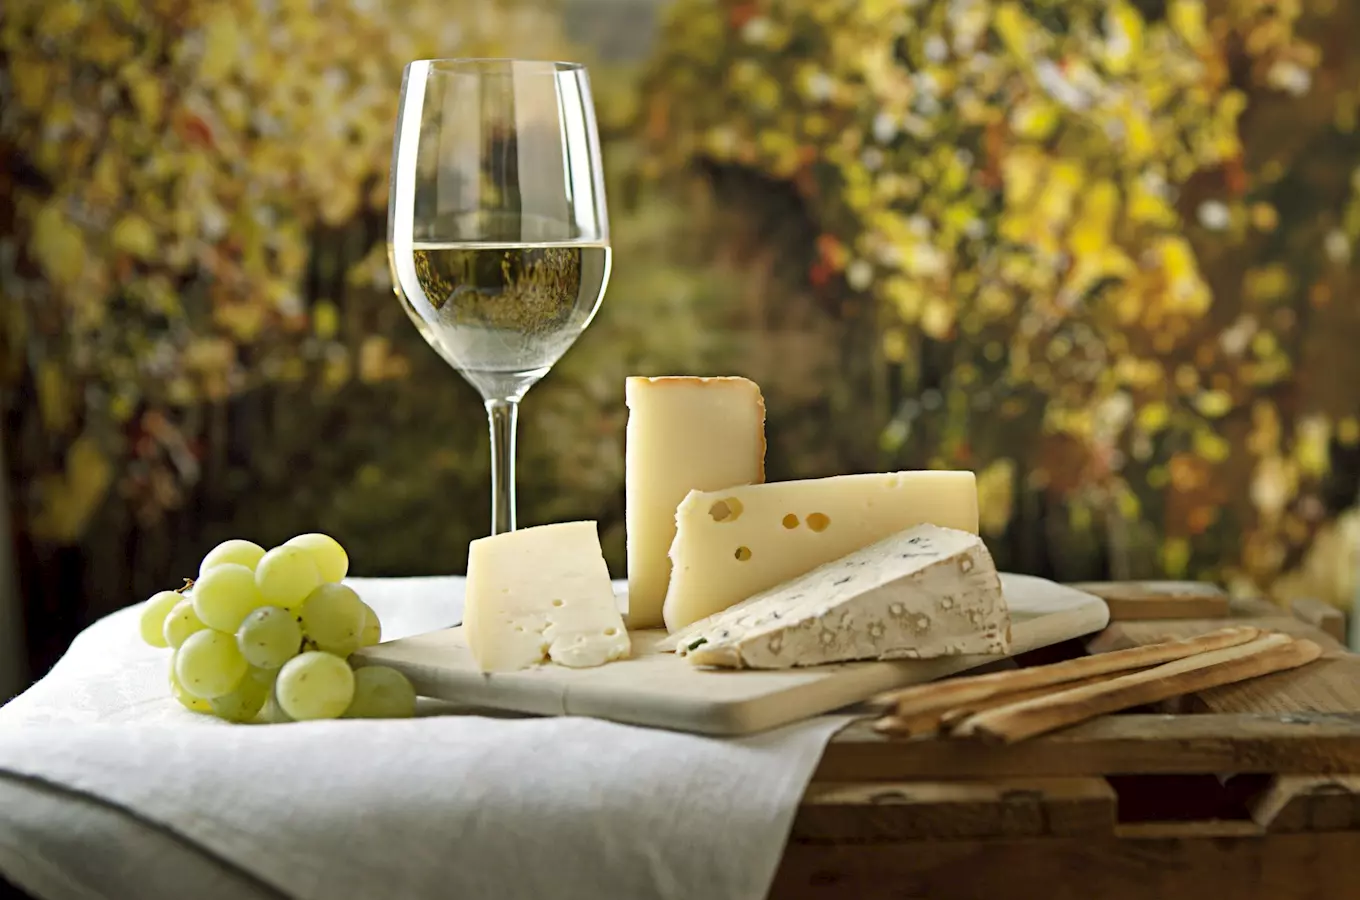 Užijte si Velkopavlovické vinobraní aneb víkendové vinařské slavnosti pro celou rodinu